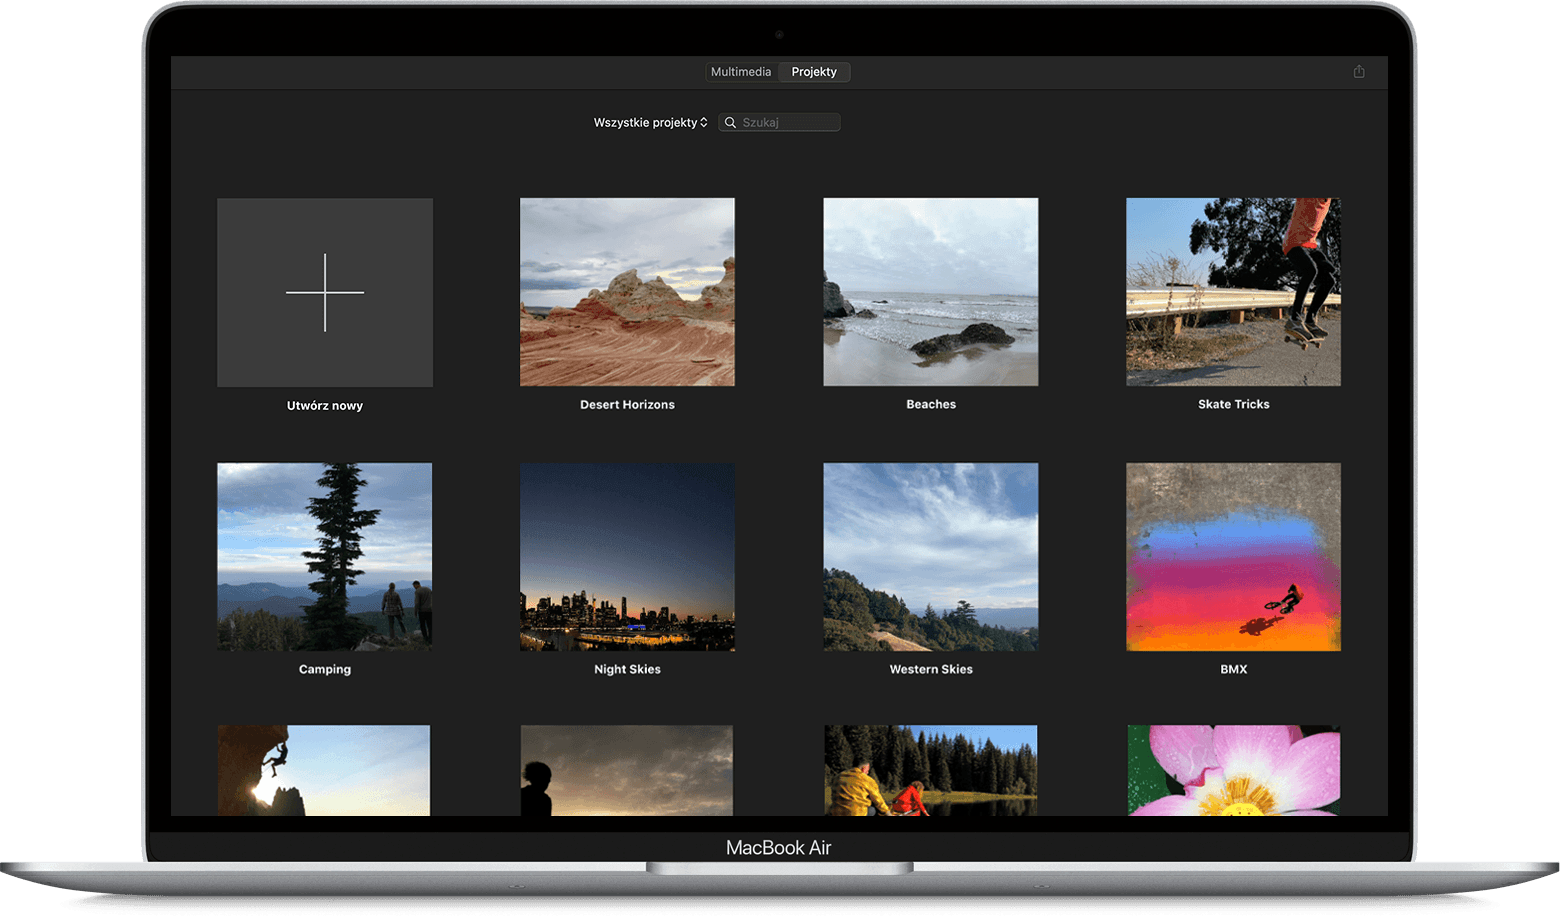 Ekran galerii projektów aplikacji iMovie na Macu